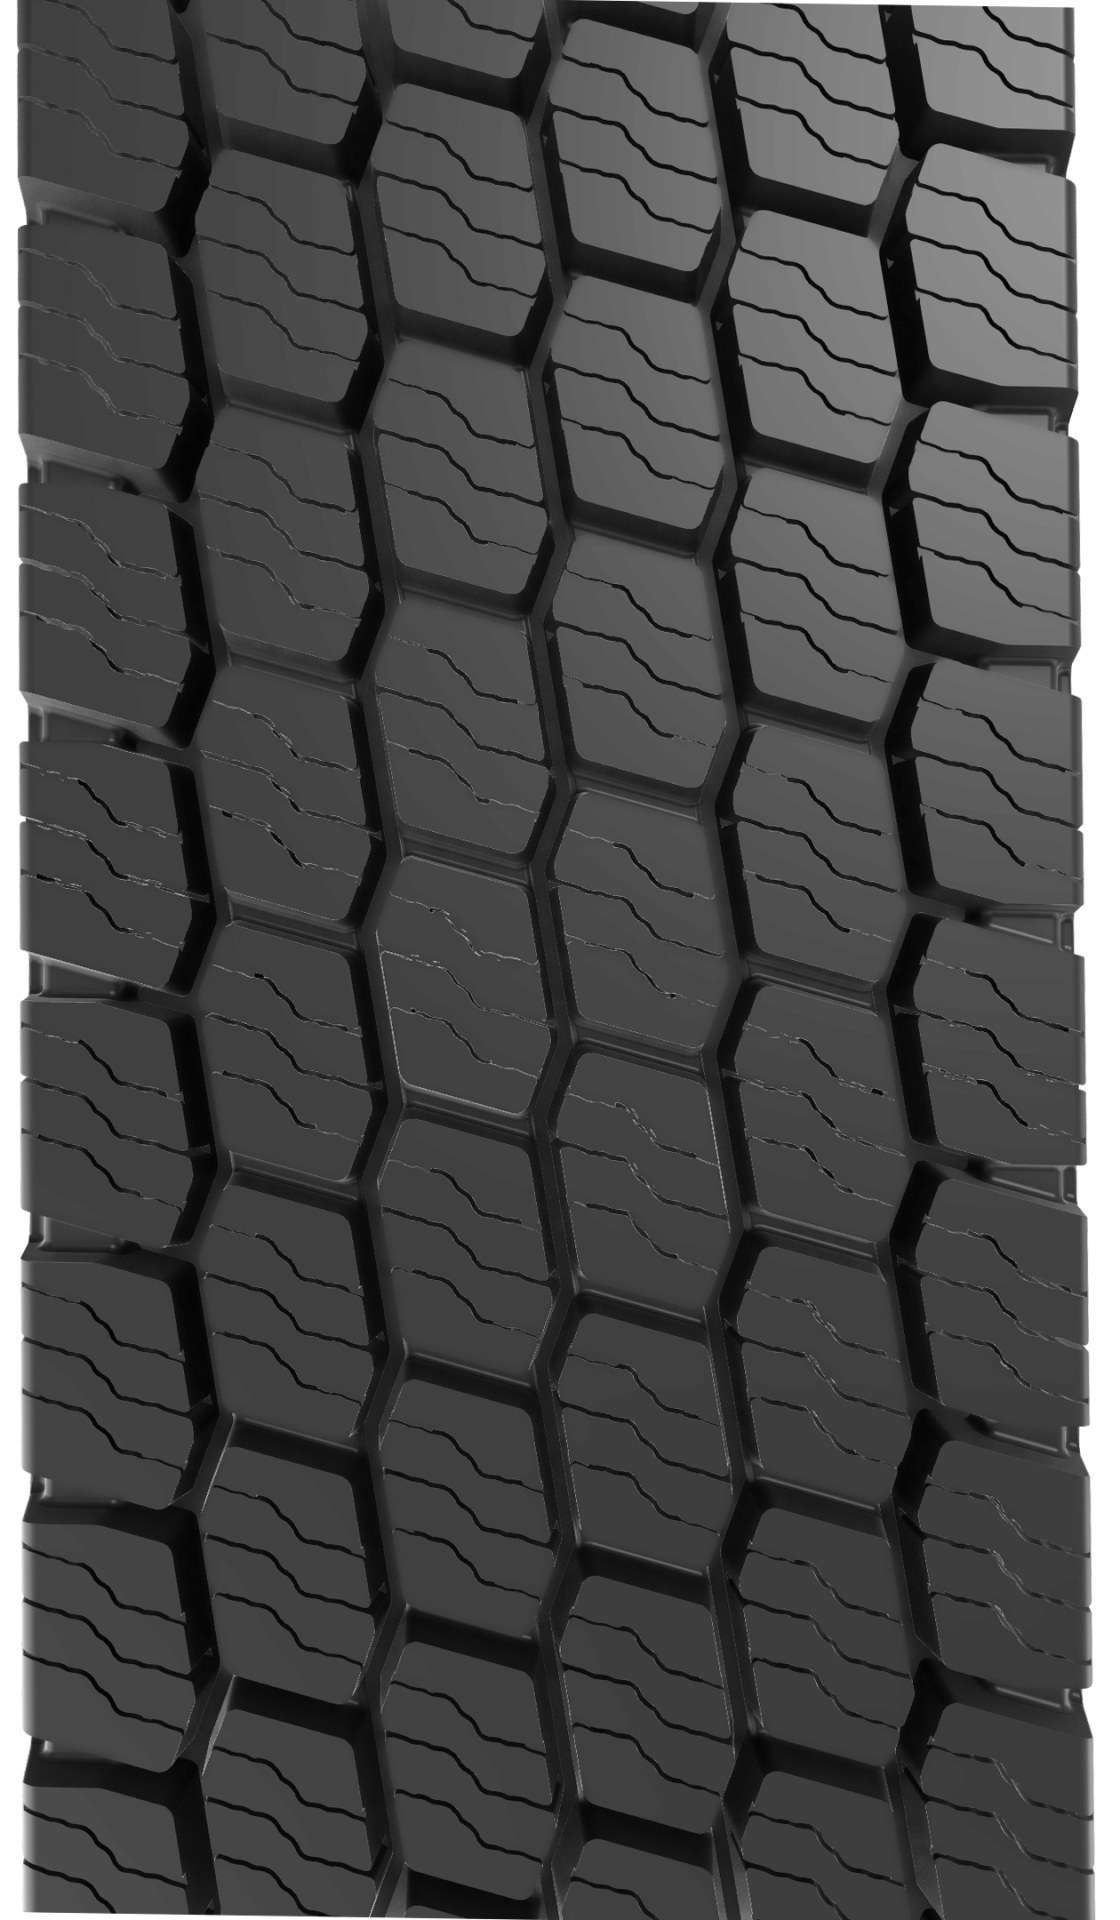 Wolf - Modèle ARF de pneu de camion